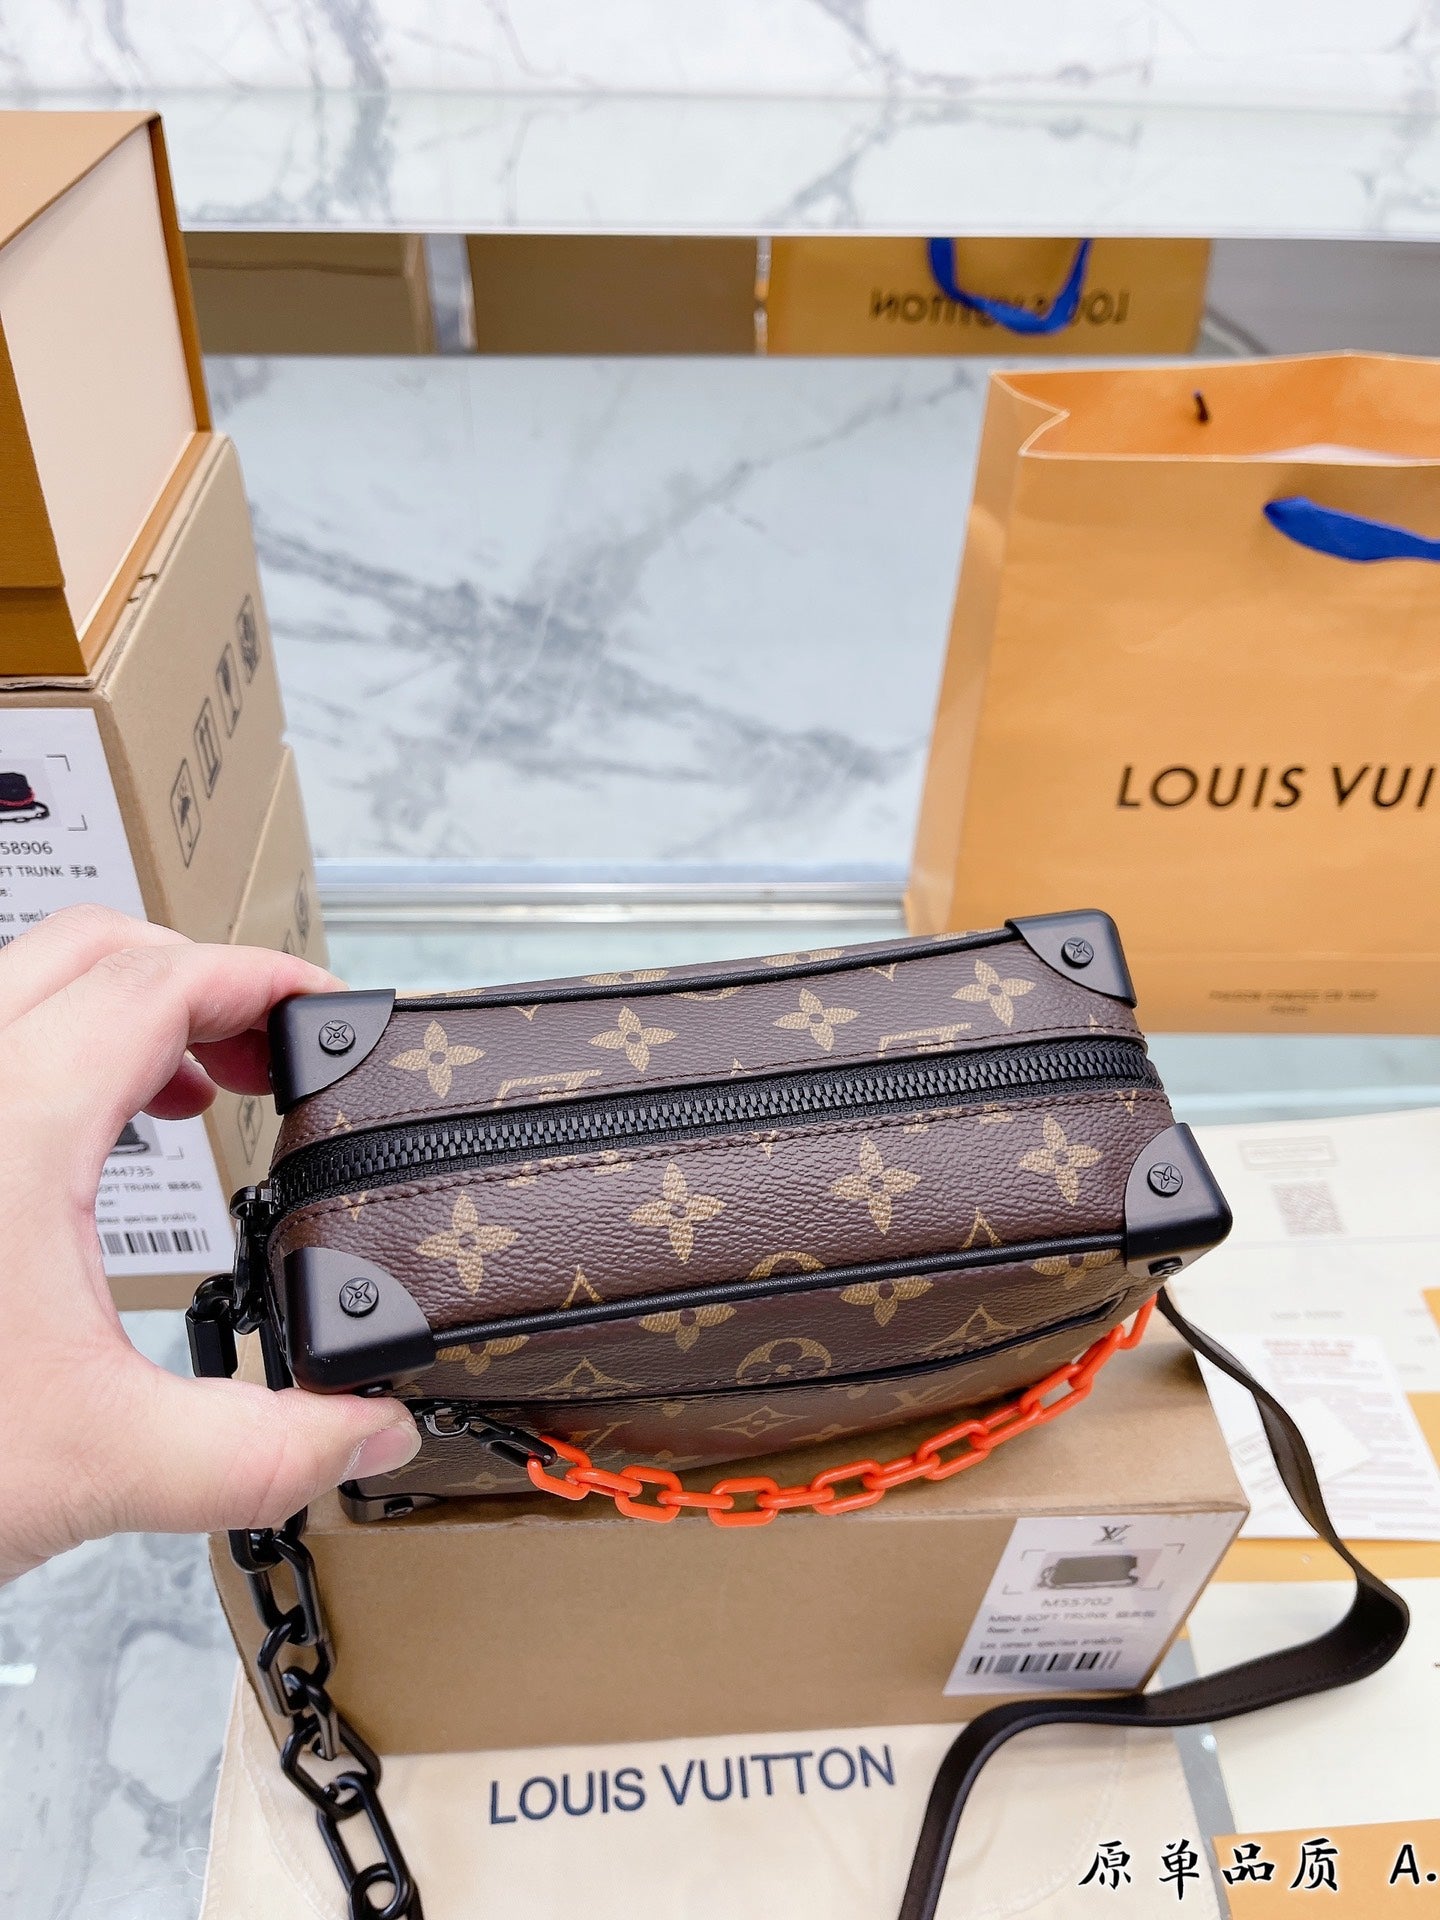 Louis Vuitton Multi-Pochette Accessoires Unboxing (ENGLISH